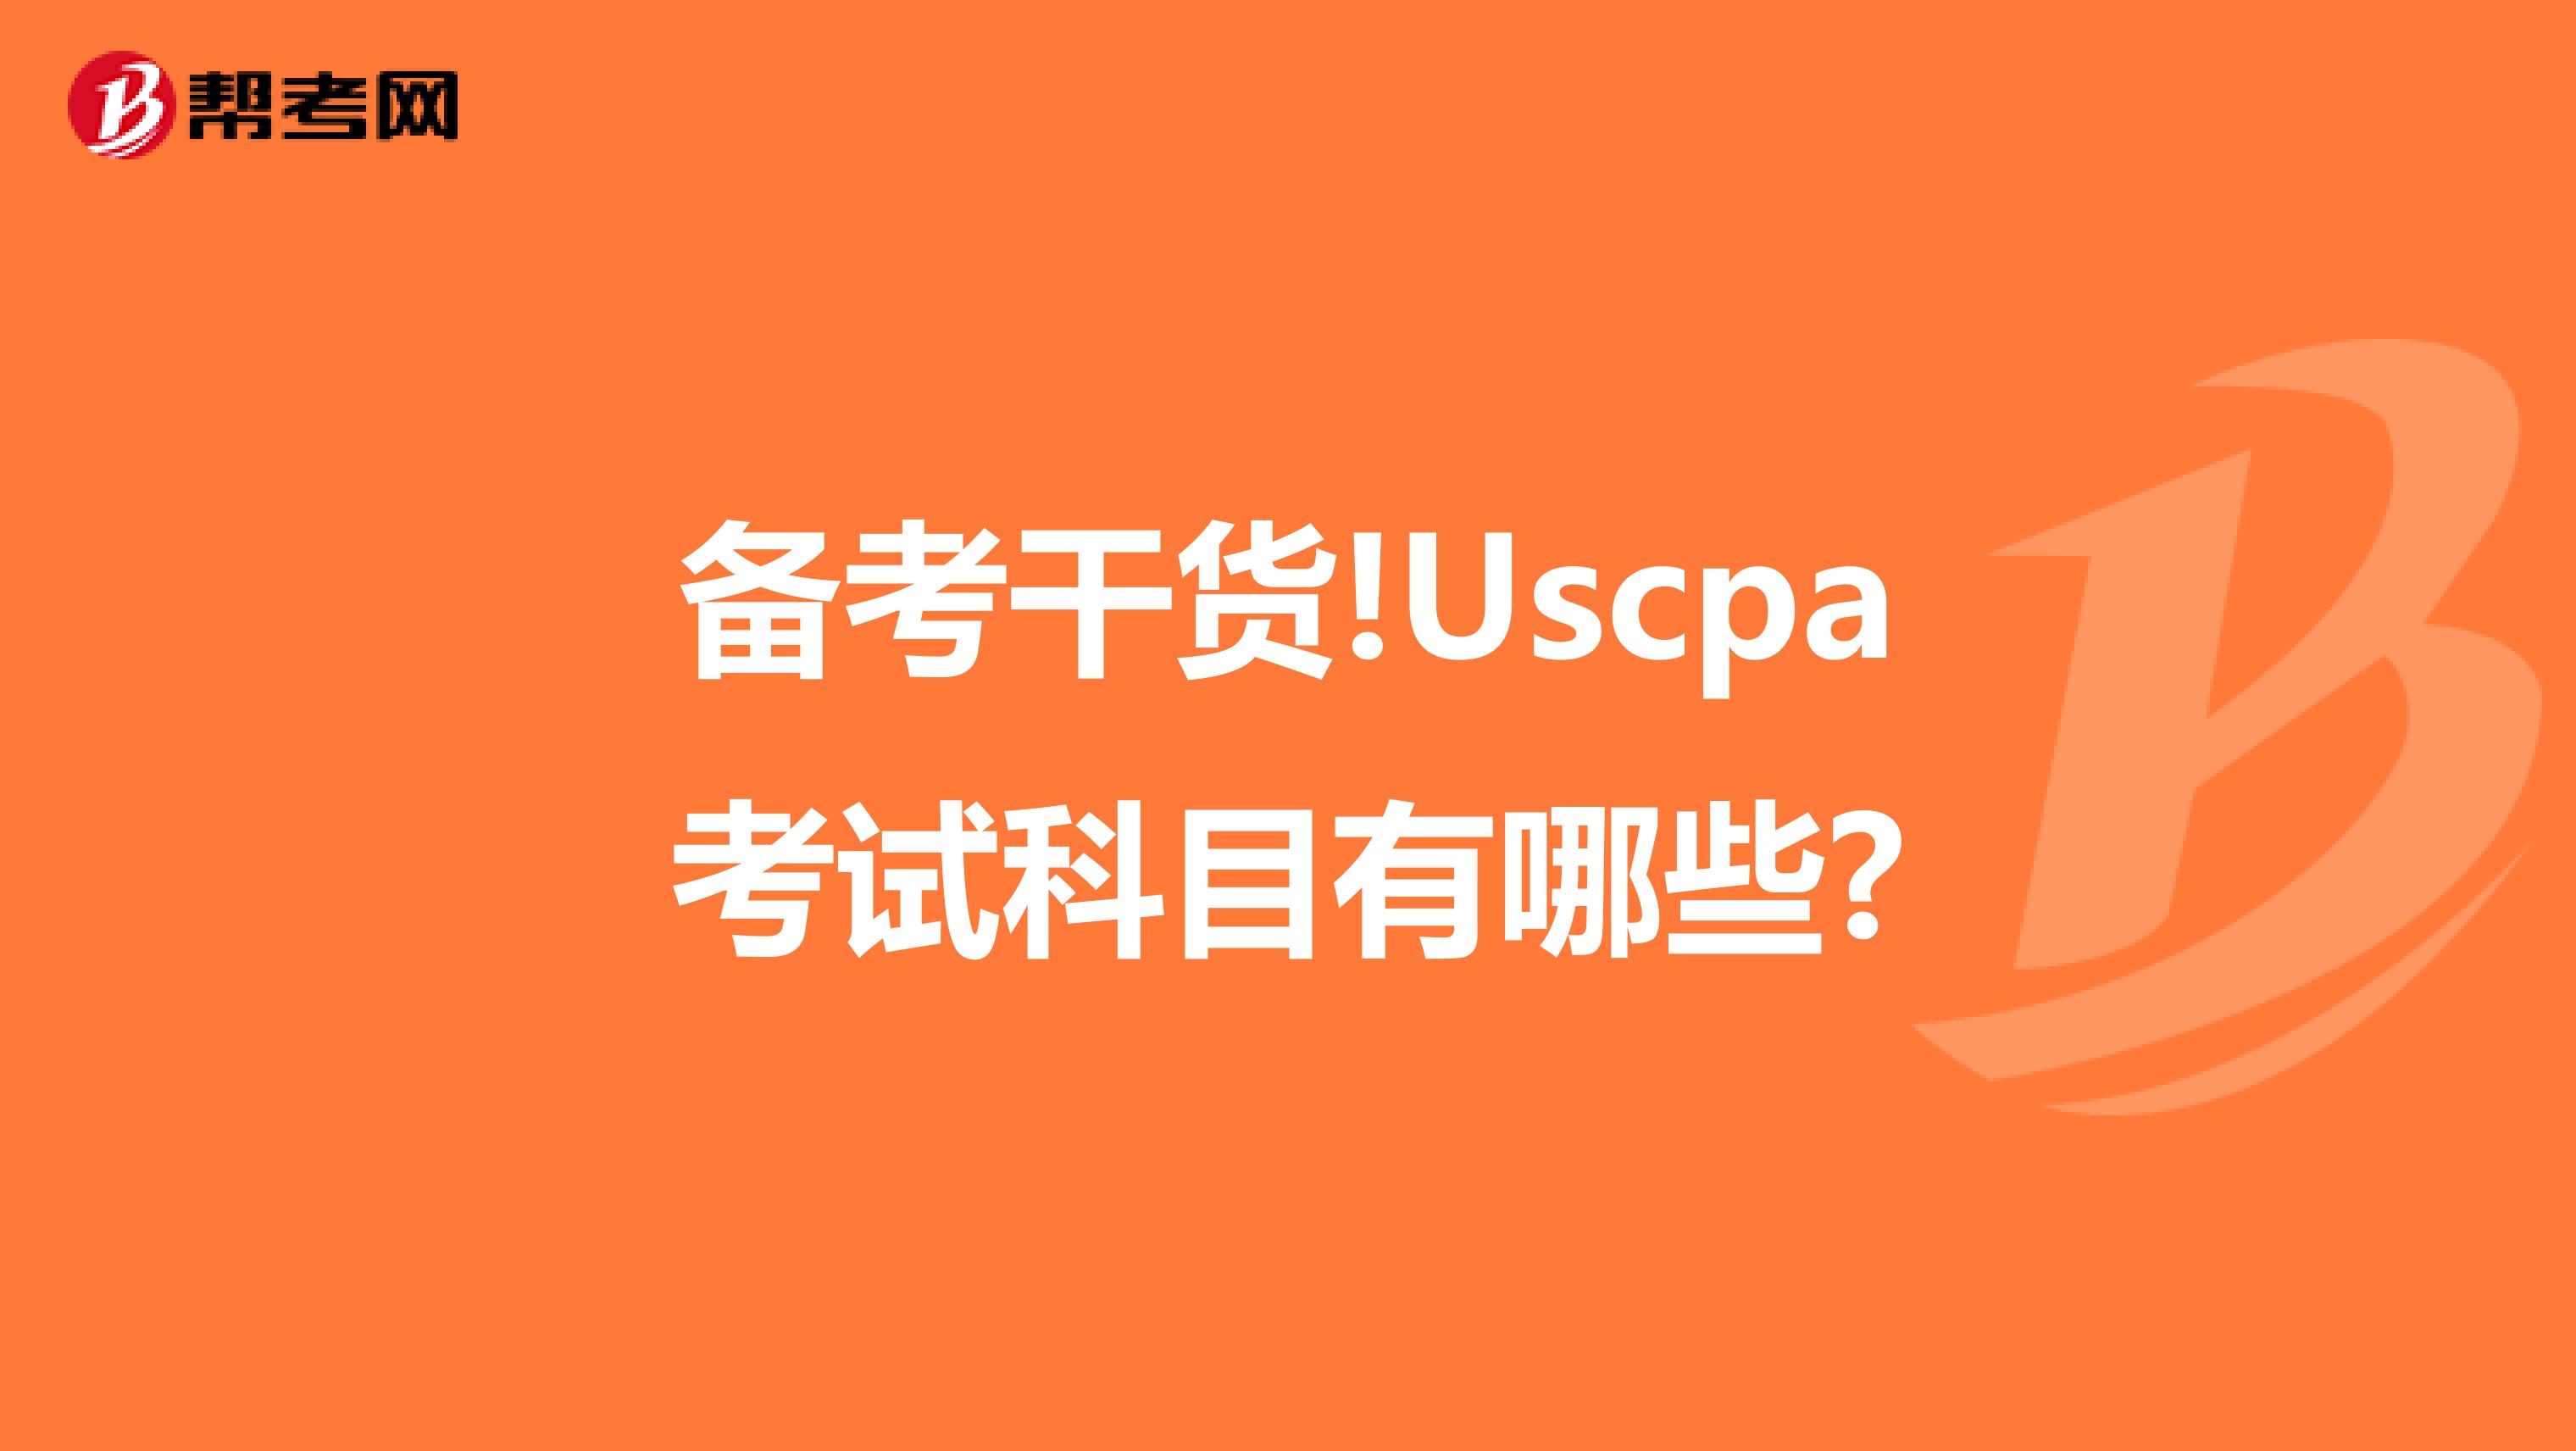 备考干货!Uscpa考试科目有哪些?